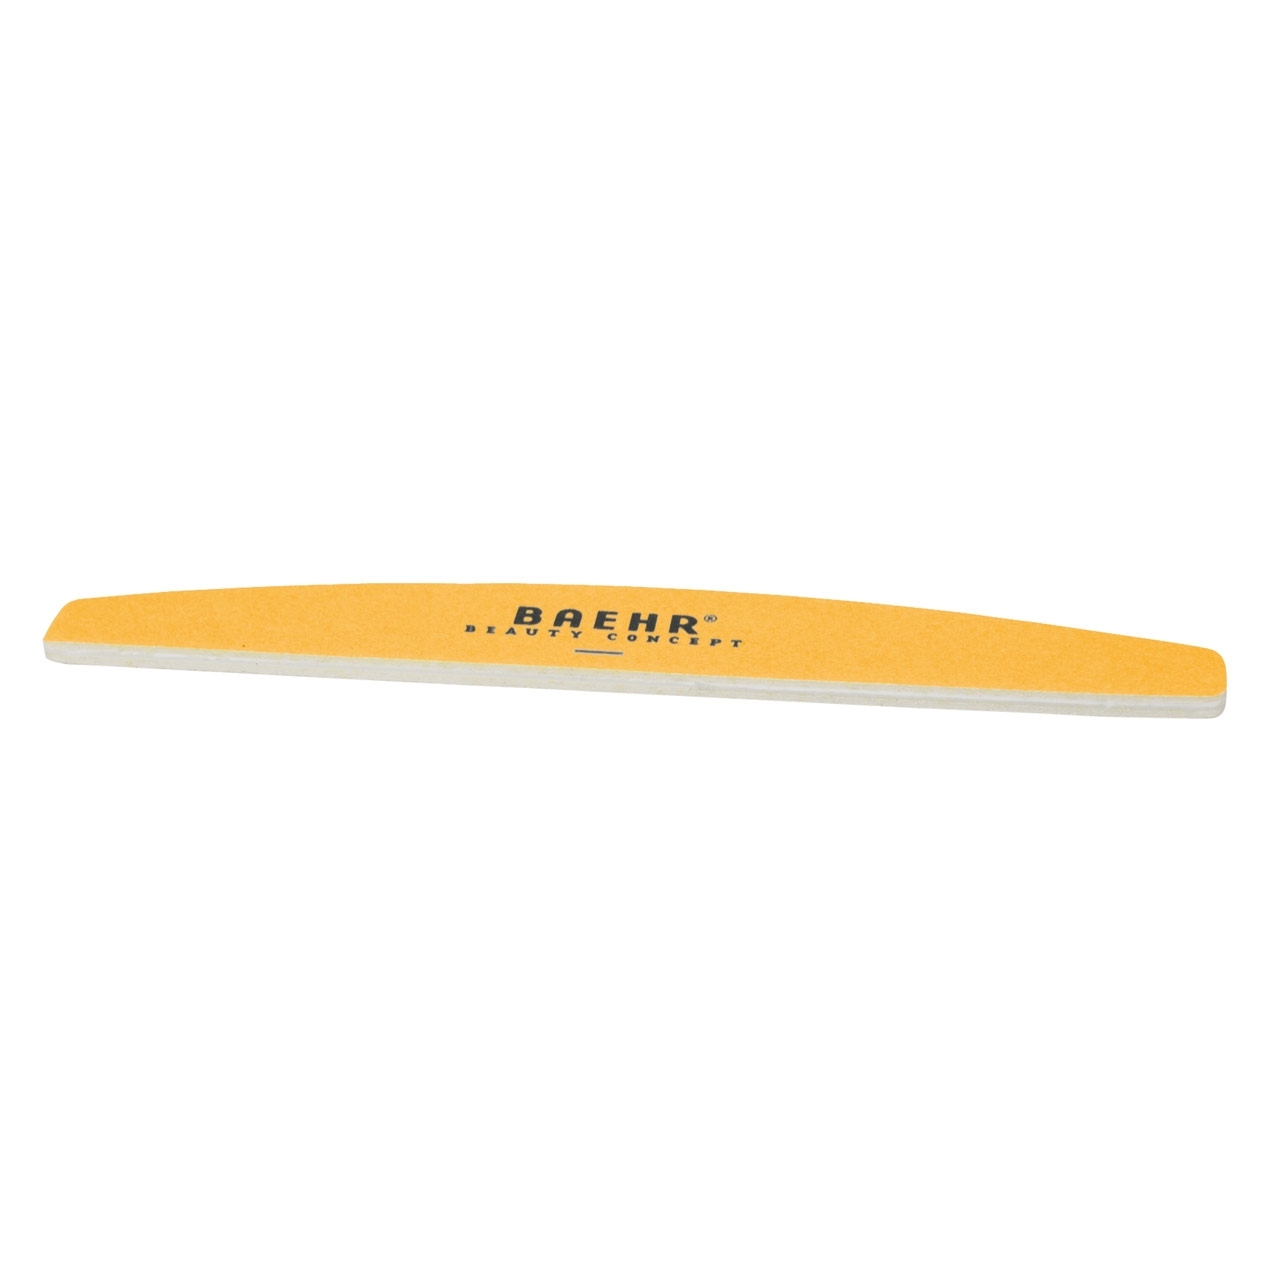 BAEHR Profifeile Bow "WEISS/APRICOT" mit Logo Körnung 100/240, 17,8cm